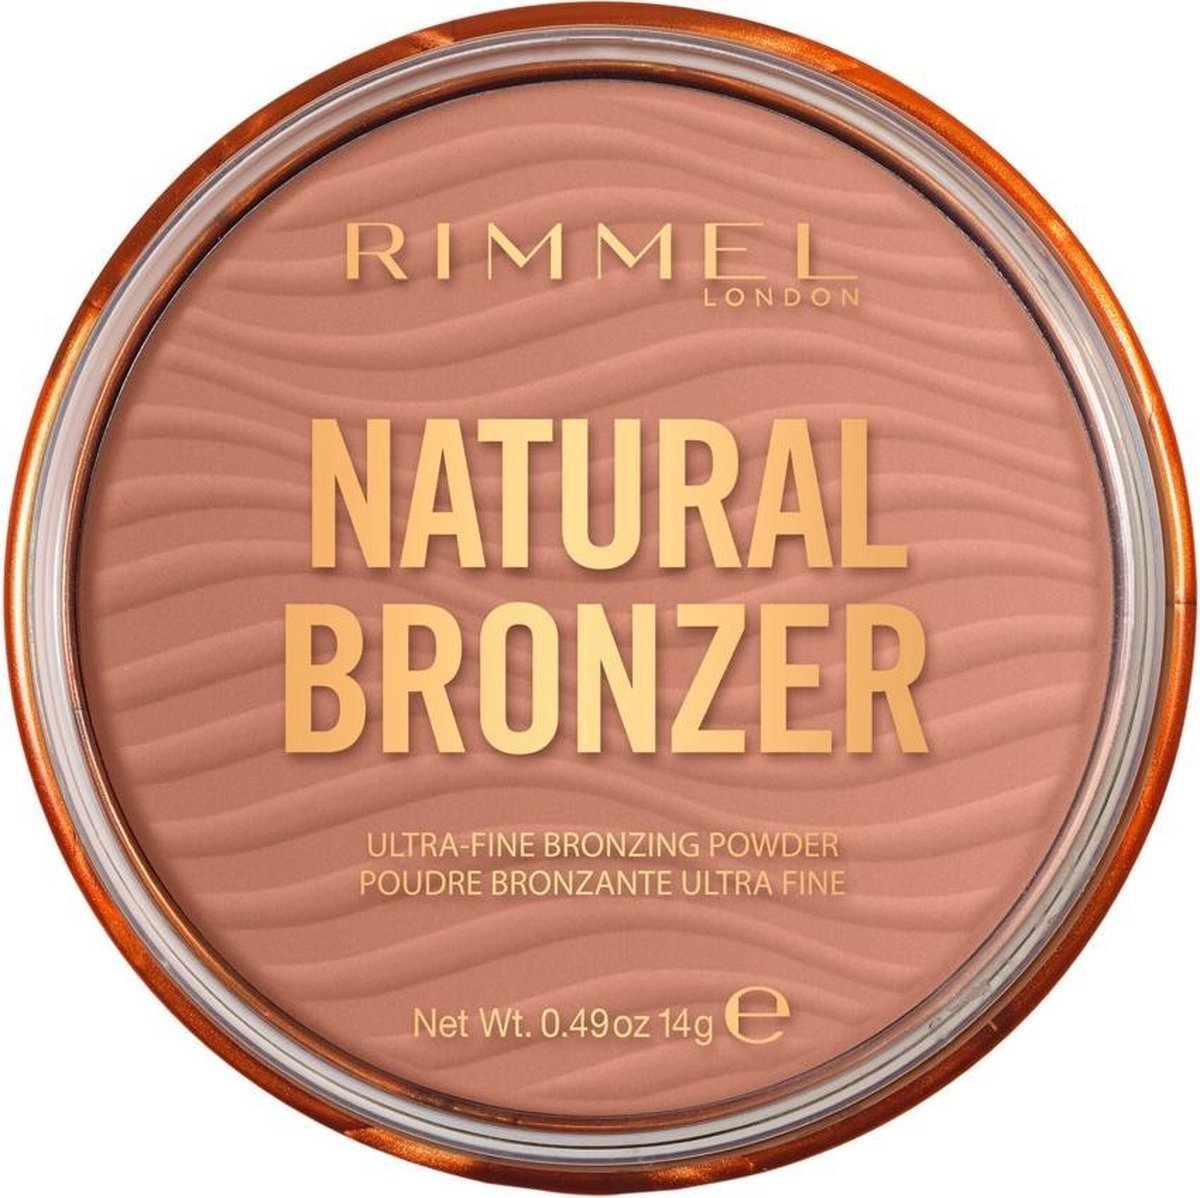 Rimmel London Natural Bronzer Ultra Fine Bronzing Powder - Sunlight 001 - Verpakking beschadigd